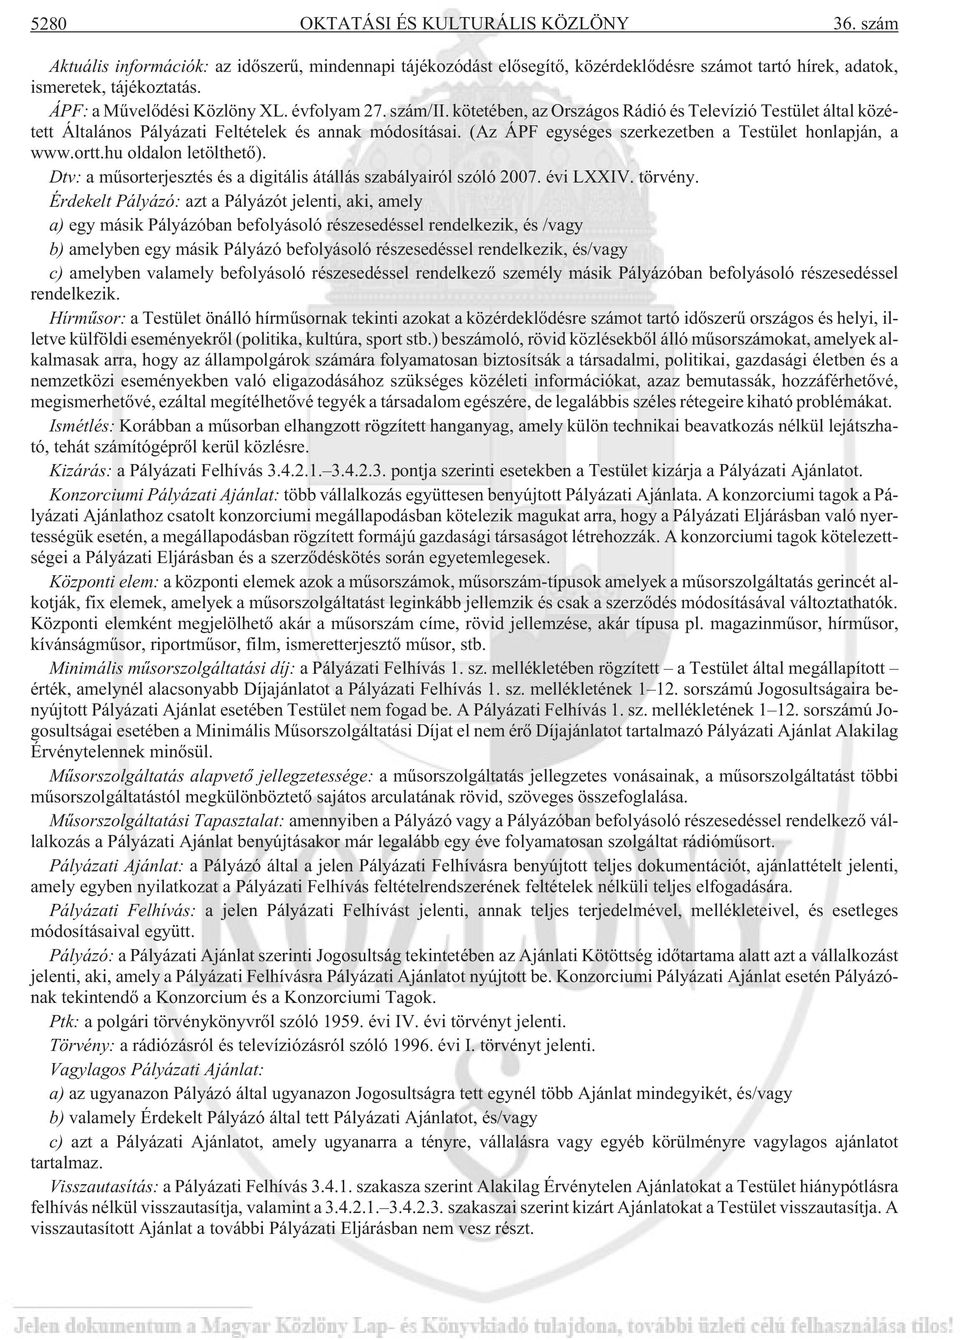 (Az ÁPF egységes szerkezetben a Testület honlapján, a www.ortt.hu oldalon letölthetõ). Dtv: a mûsorterjesztés és a digitális átállás szabályairól szóló 2007. évi LXXIV. törvény.